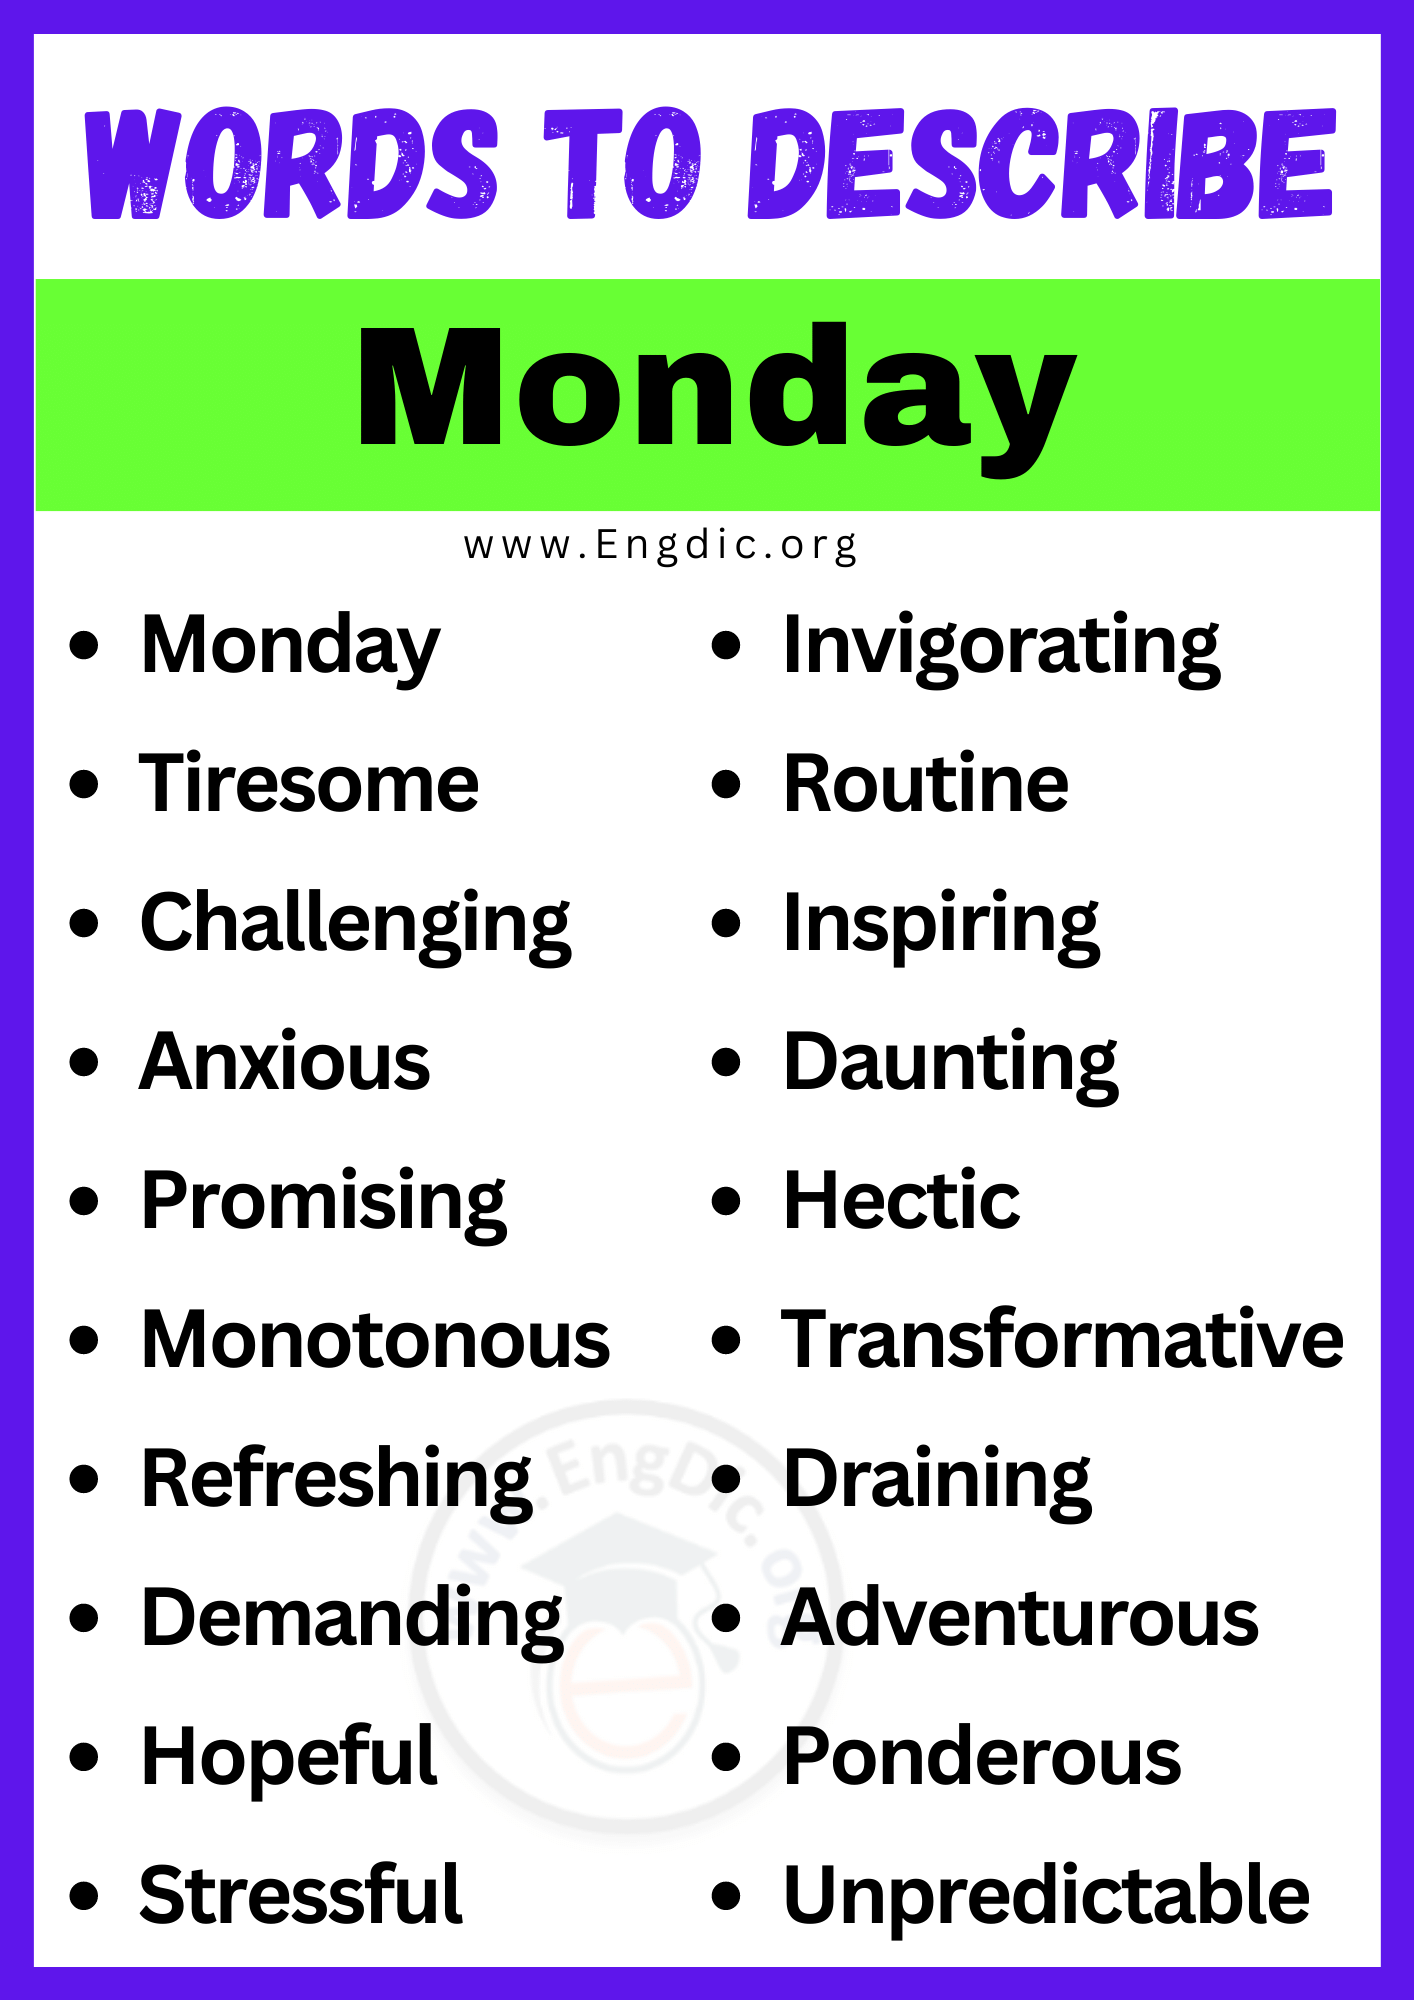 Words to Describe Monday